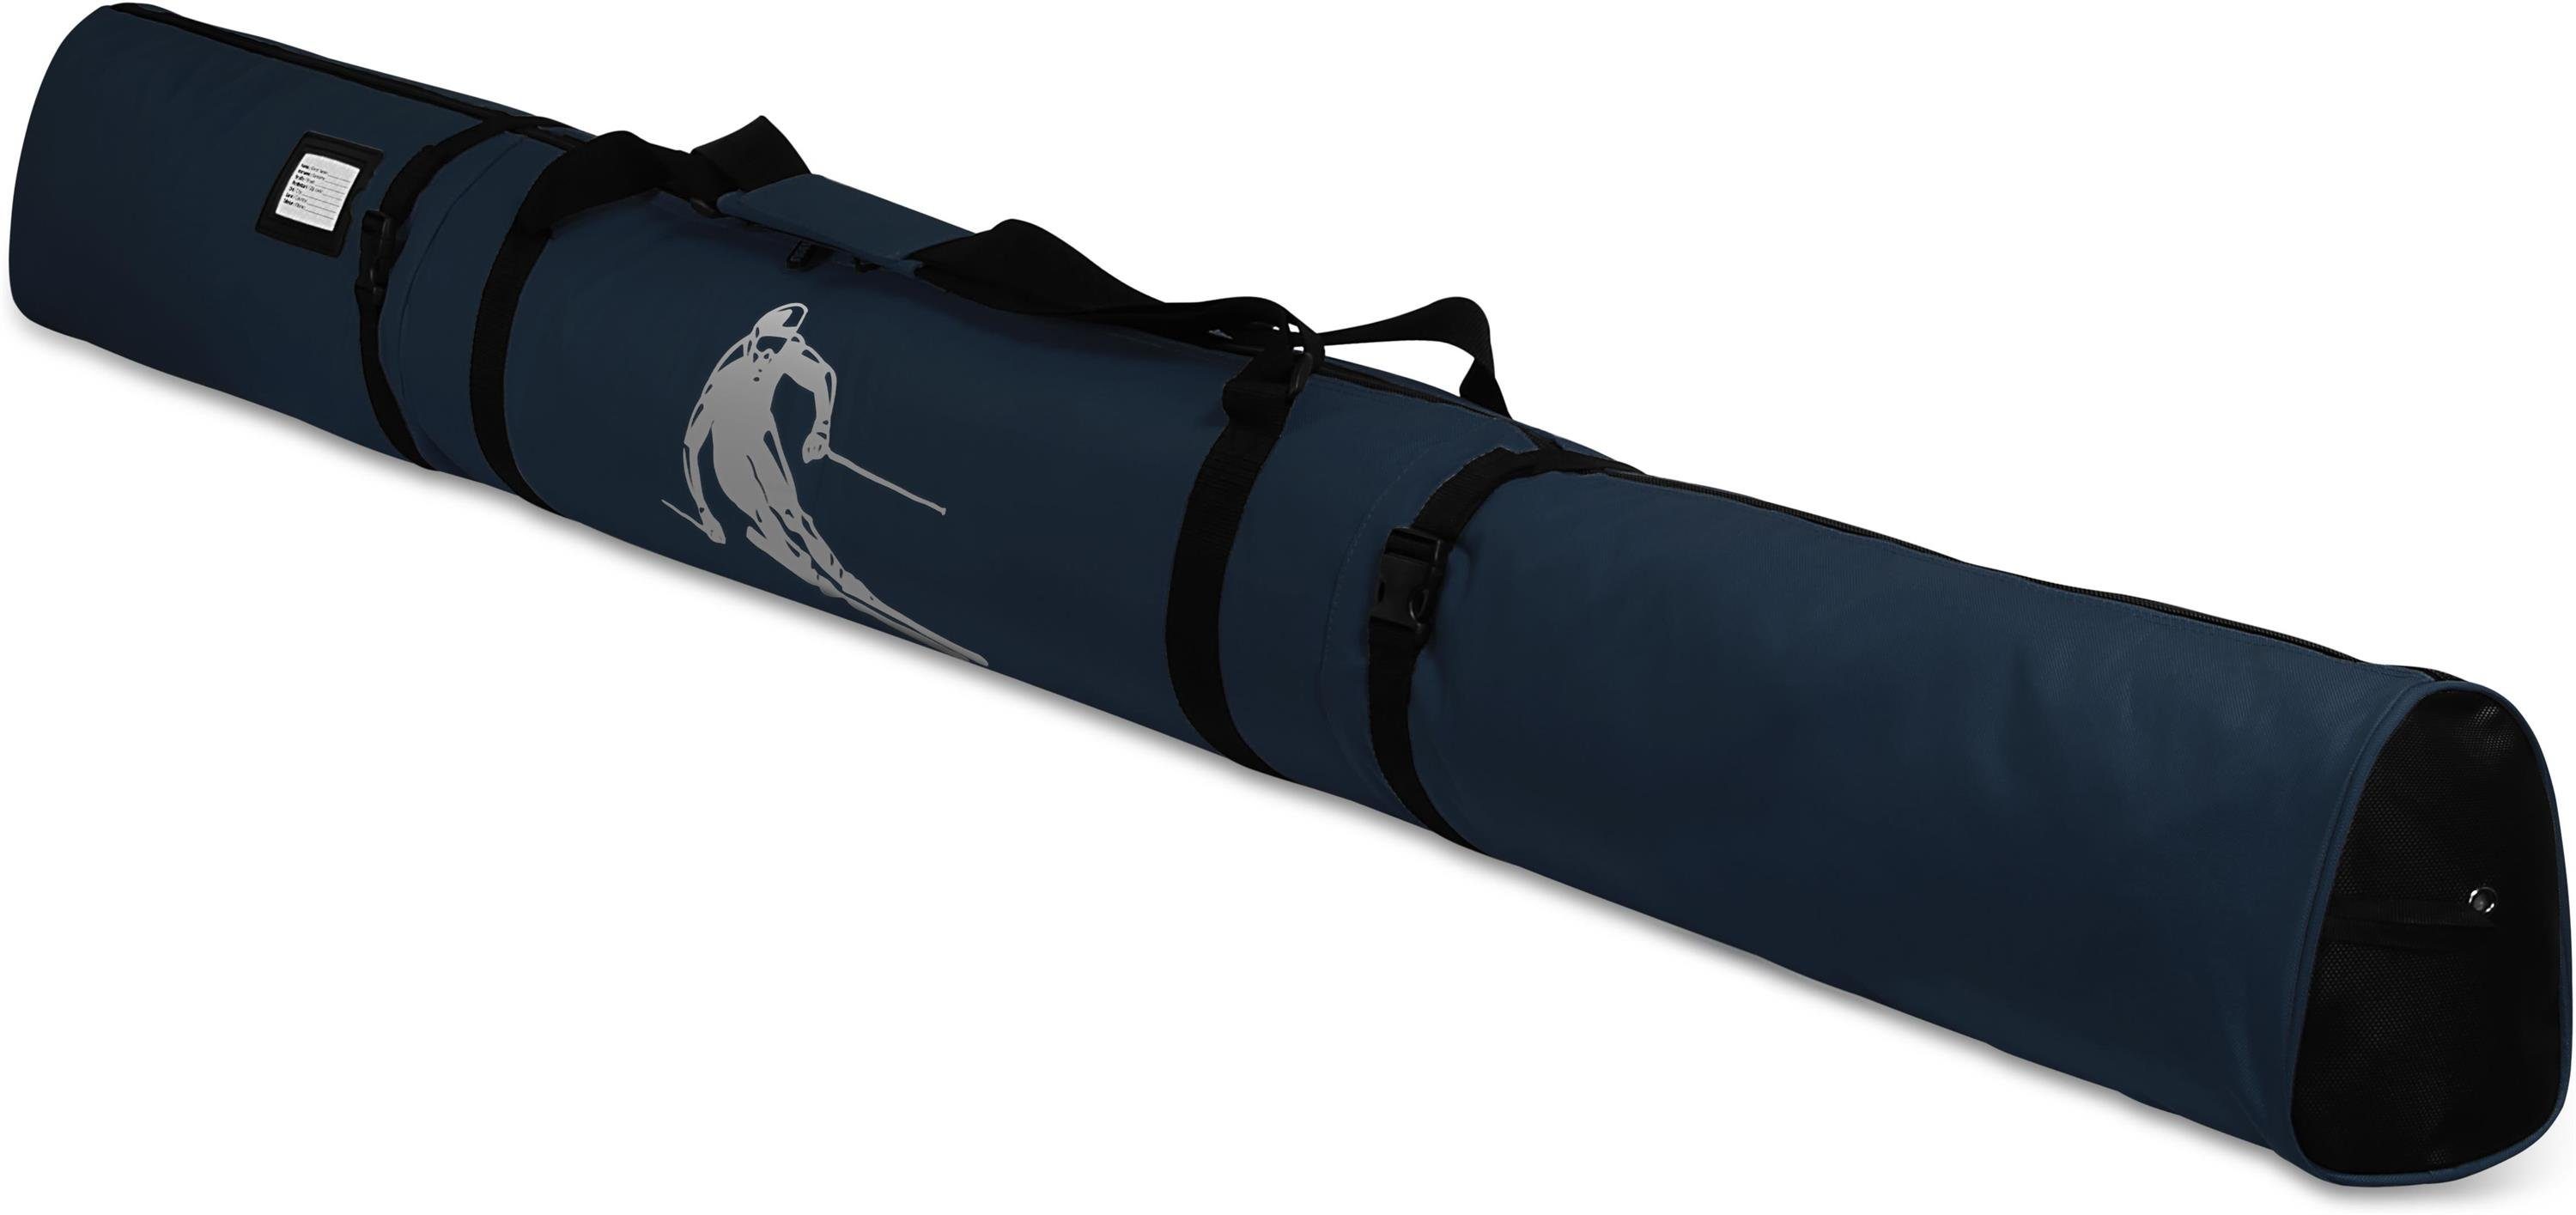 Skitasche 200, Skistöcke Run Navy für Skier Sporttasche Aufbewahrungstasche Alpine normani und Skisack Skitasche - Transporttasche